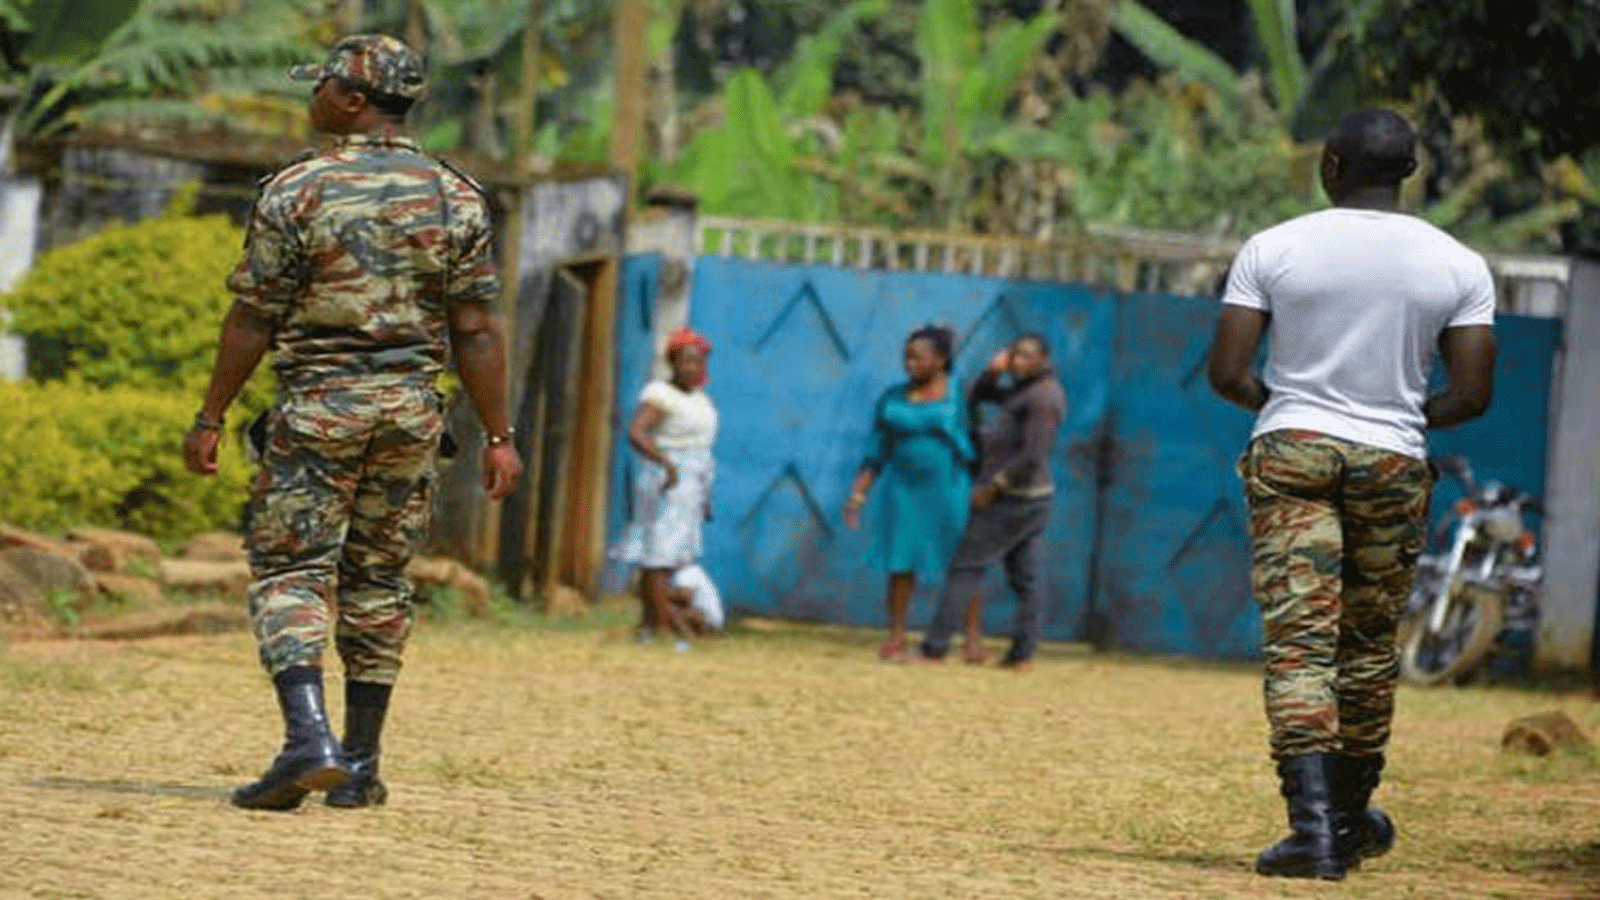 جنود حكوميون خلال دورية في بافوت. صورة أرشيفية التُقِطَت في منطقة الكاميرون المضطربة الناطقة بالإنجليزية في شمال غرب البلاد